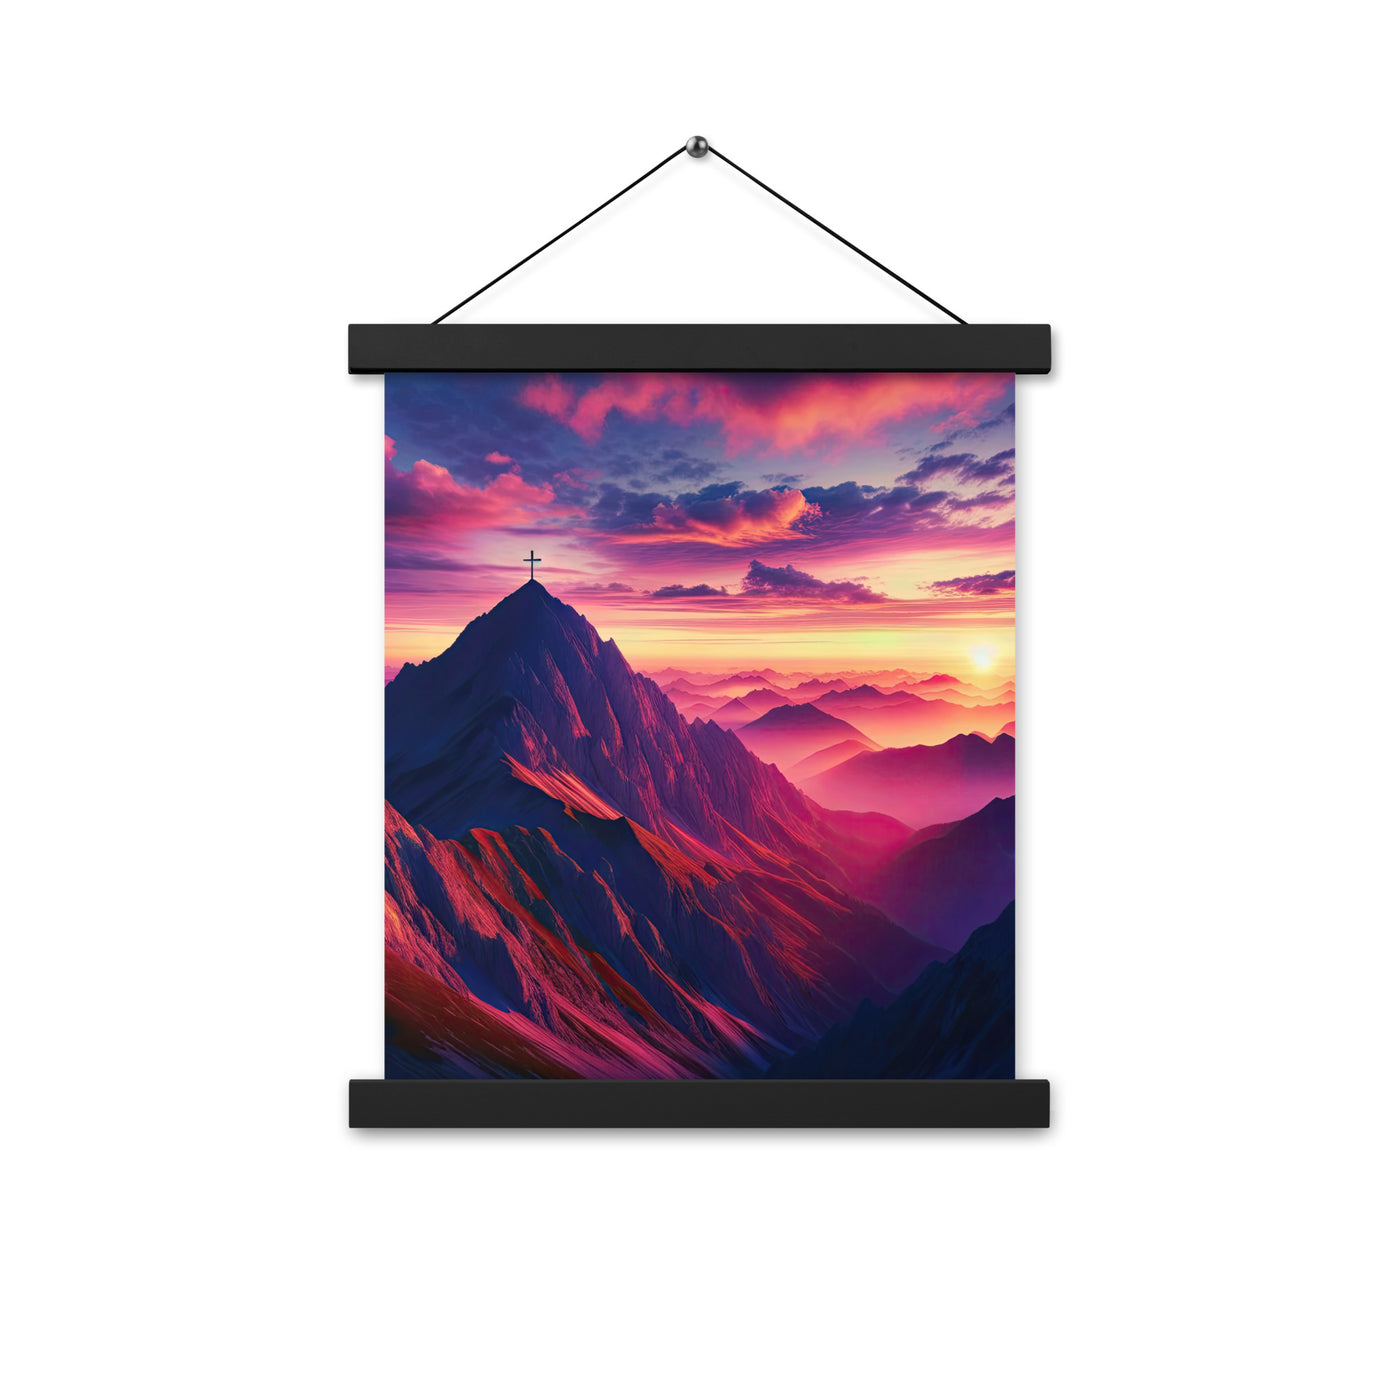 Dramatischer Alpen-Sonnenaufgang, Gipfelkreuz und warme Himmelsfarben - Premium Poster mit Aufhängung berge xxx yyy zzz 27.9 x 35.6 cm